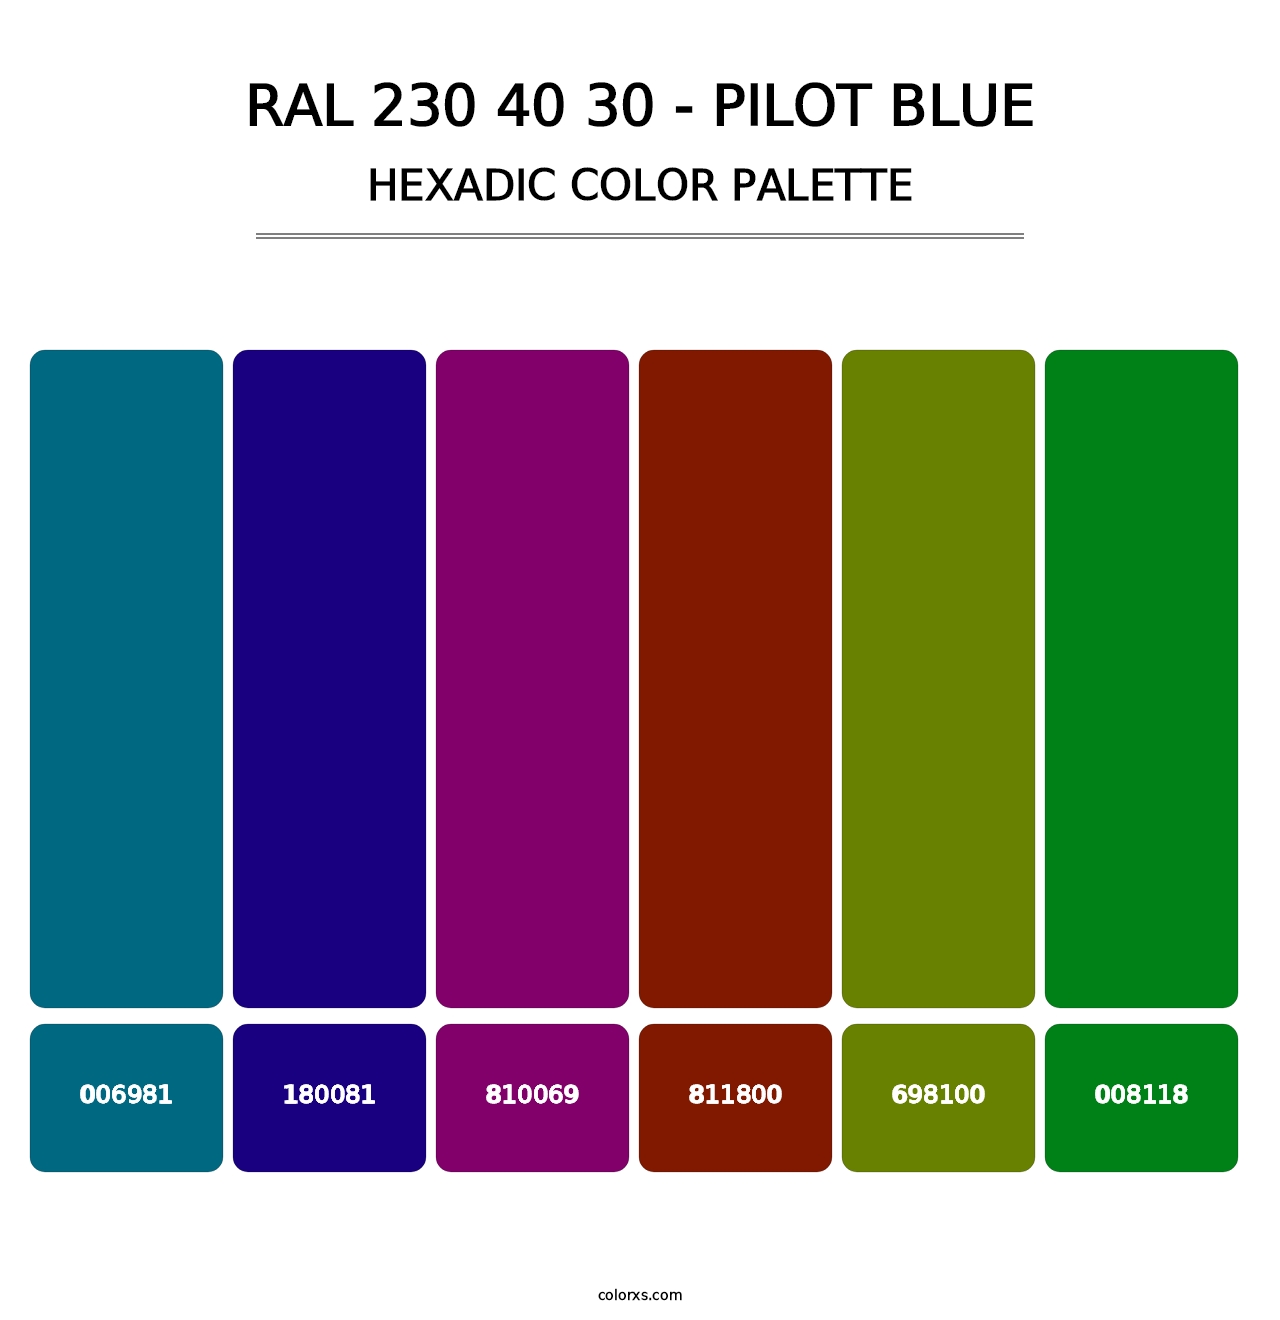 RAL 230 40 30 - Pilot Blue - Hexadic Color Palette